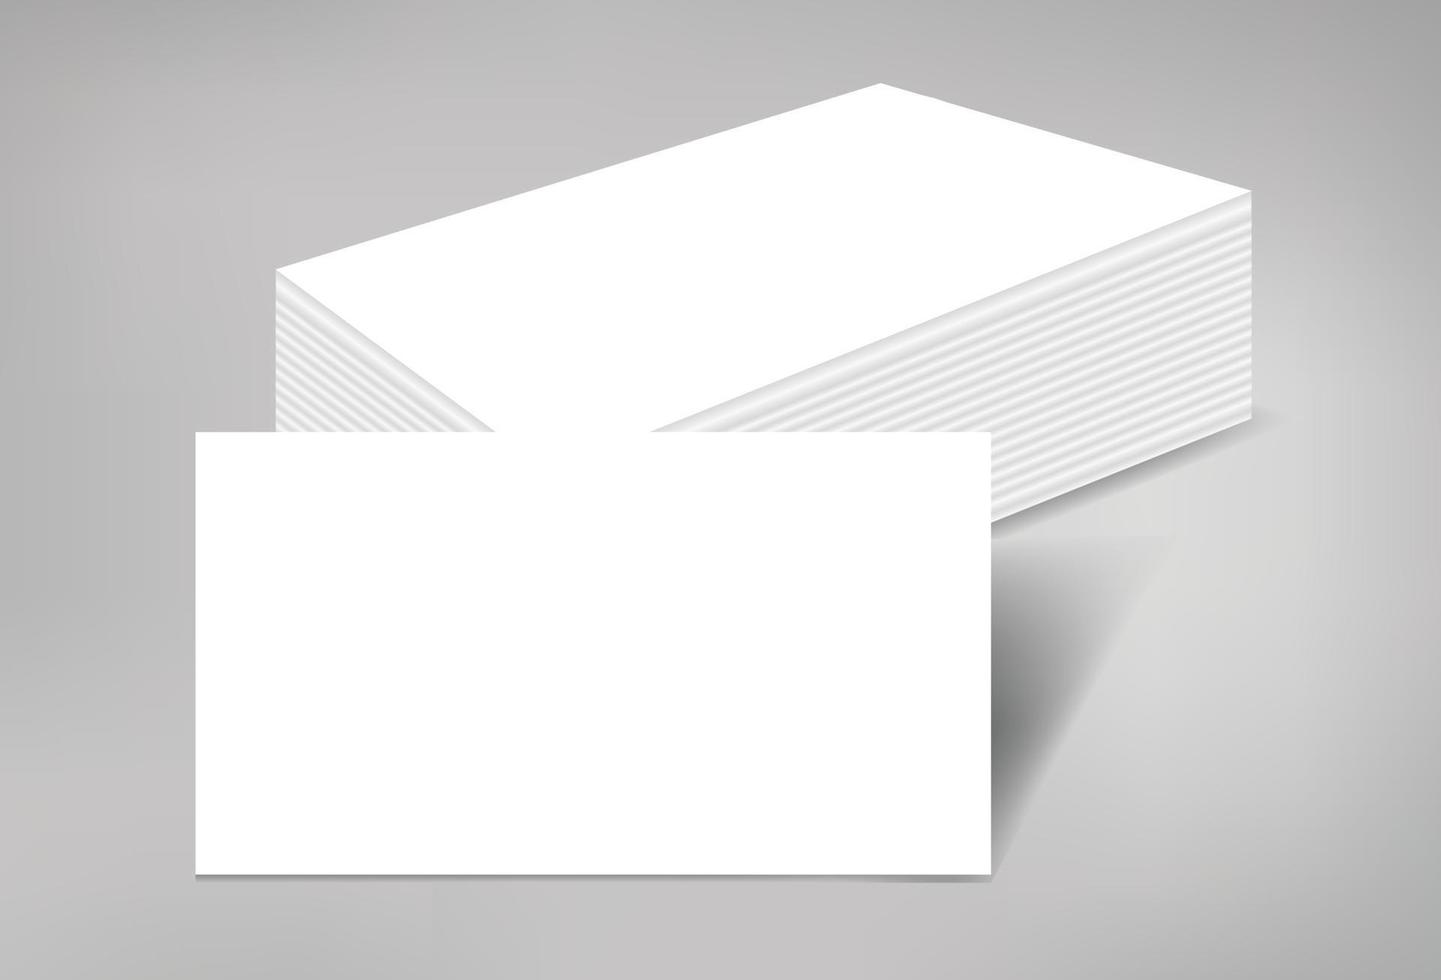 cartão de visita em branco pilha de maquete de páginas papel branco para impressão lona documento de identidade de marca anúncio apresentação empresa corporativa ilustração isolada modelo realista vetor